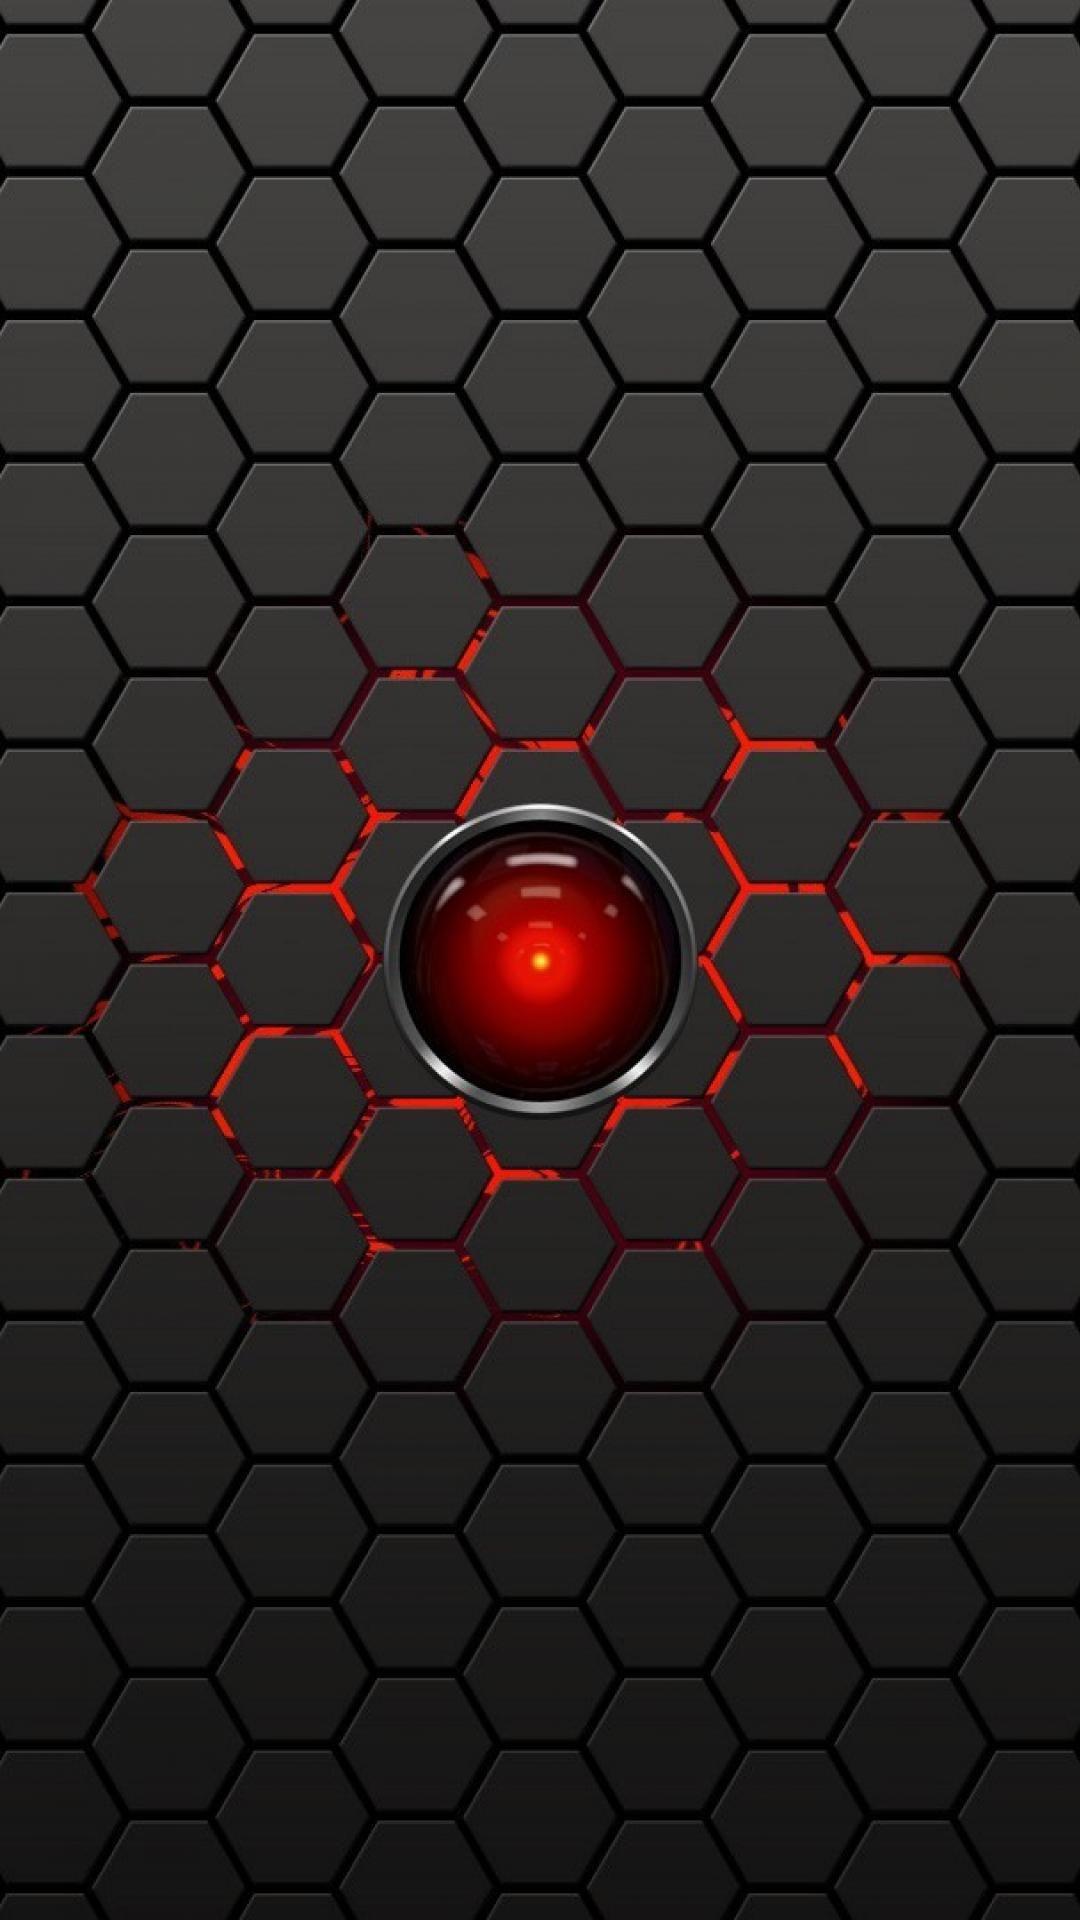 Red hex. Hal 9000. Искусственный интеллект hal 9000. Hexagon Red.